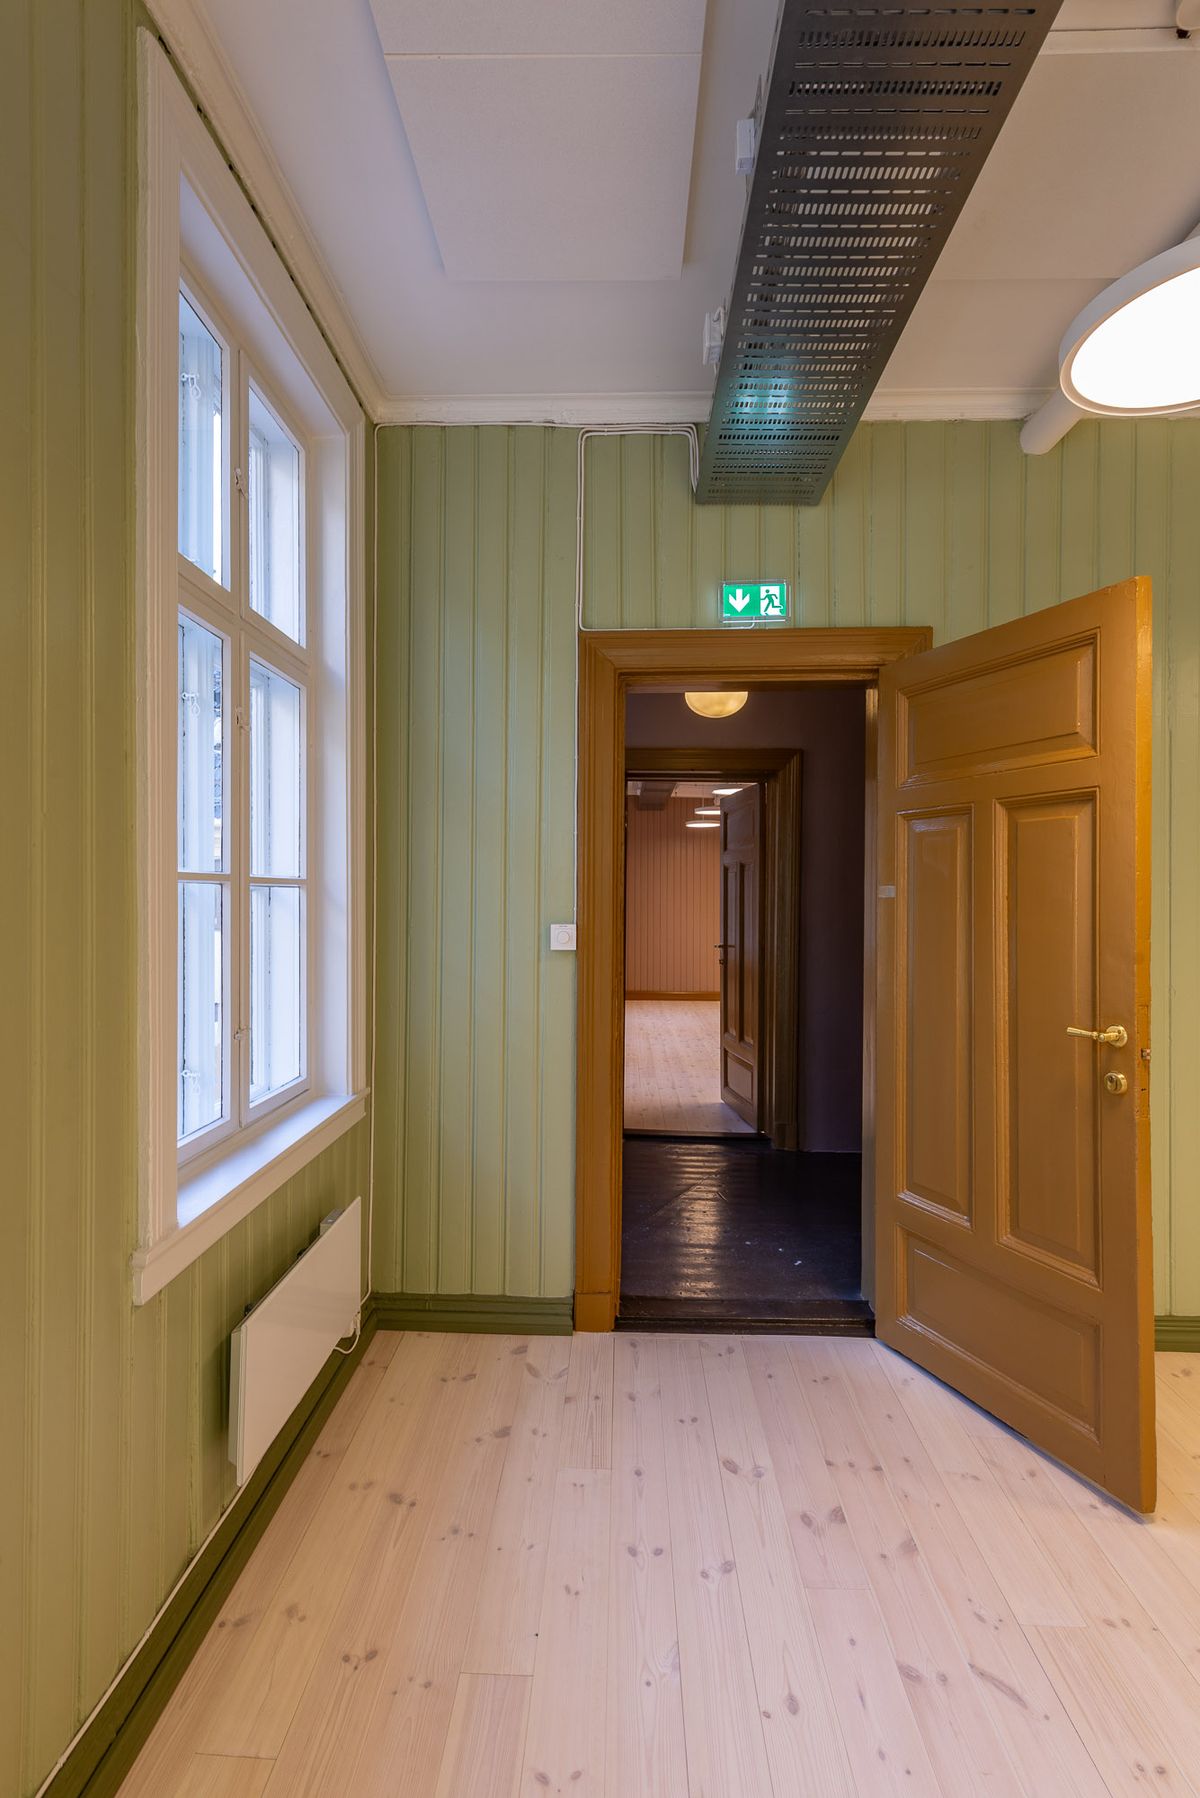 Fotografi av et grønt rom i andre etasje, med perspektiv mot et annet større rom i brune vegger. 